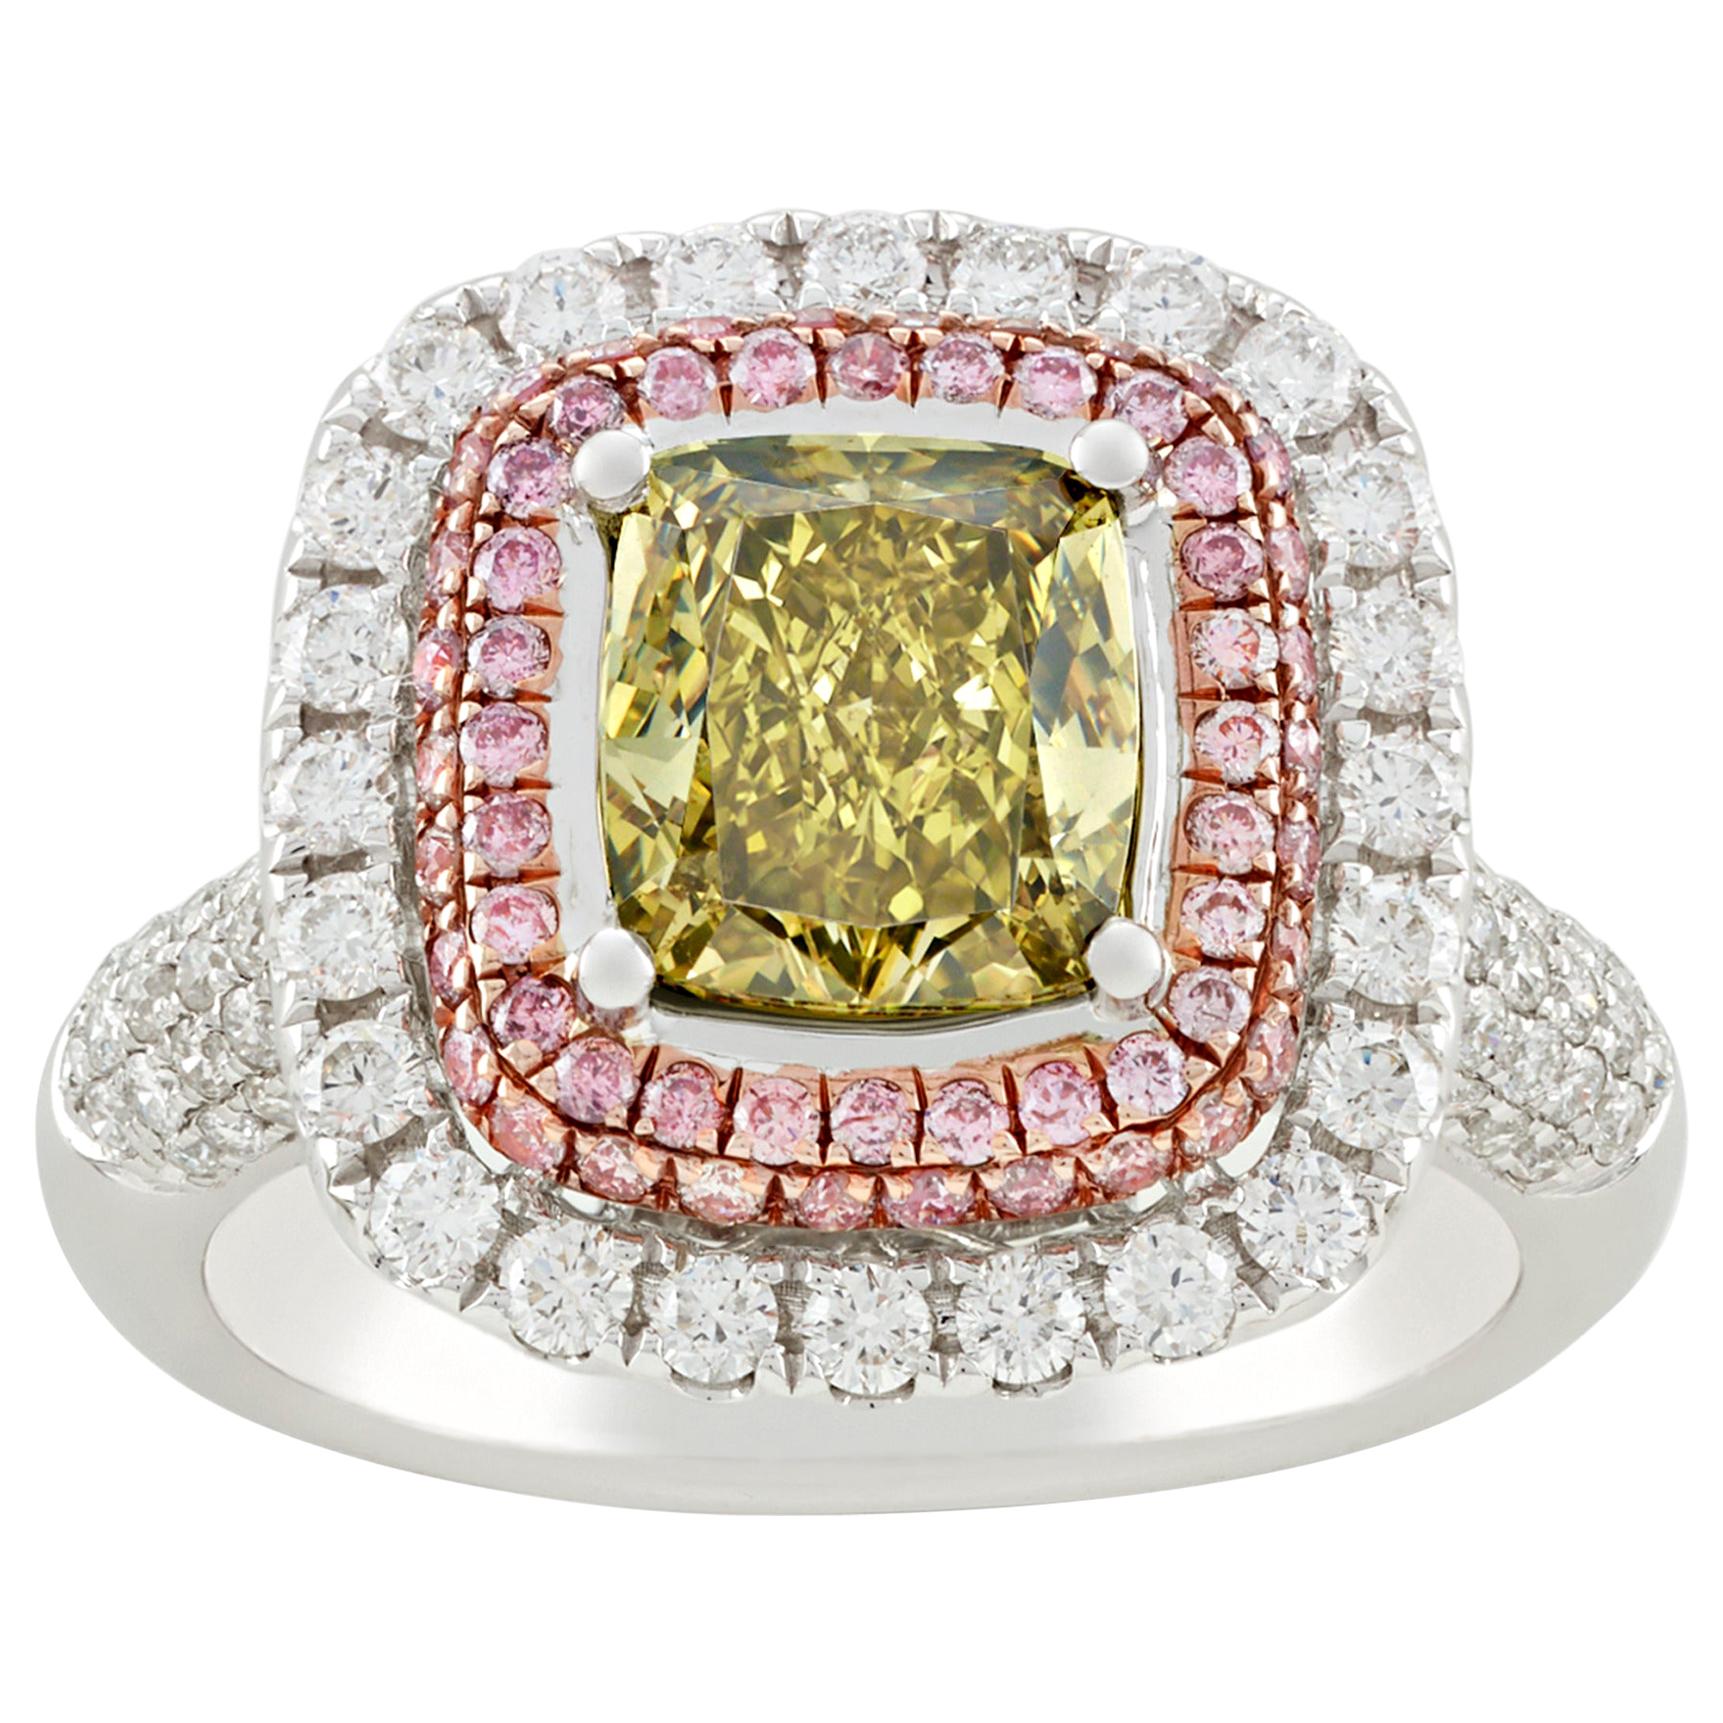 Greenish Yellow Diamond Ring, 2.01 Carats